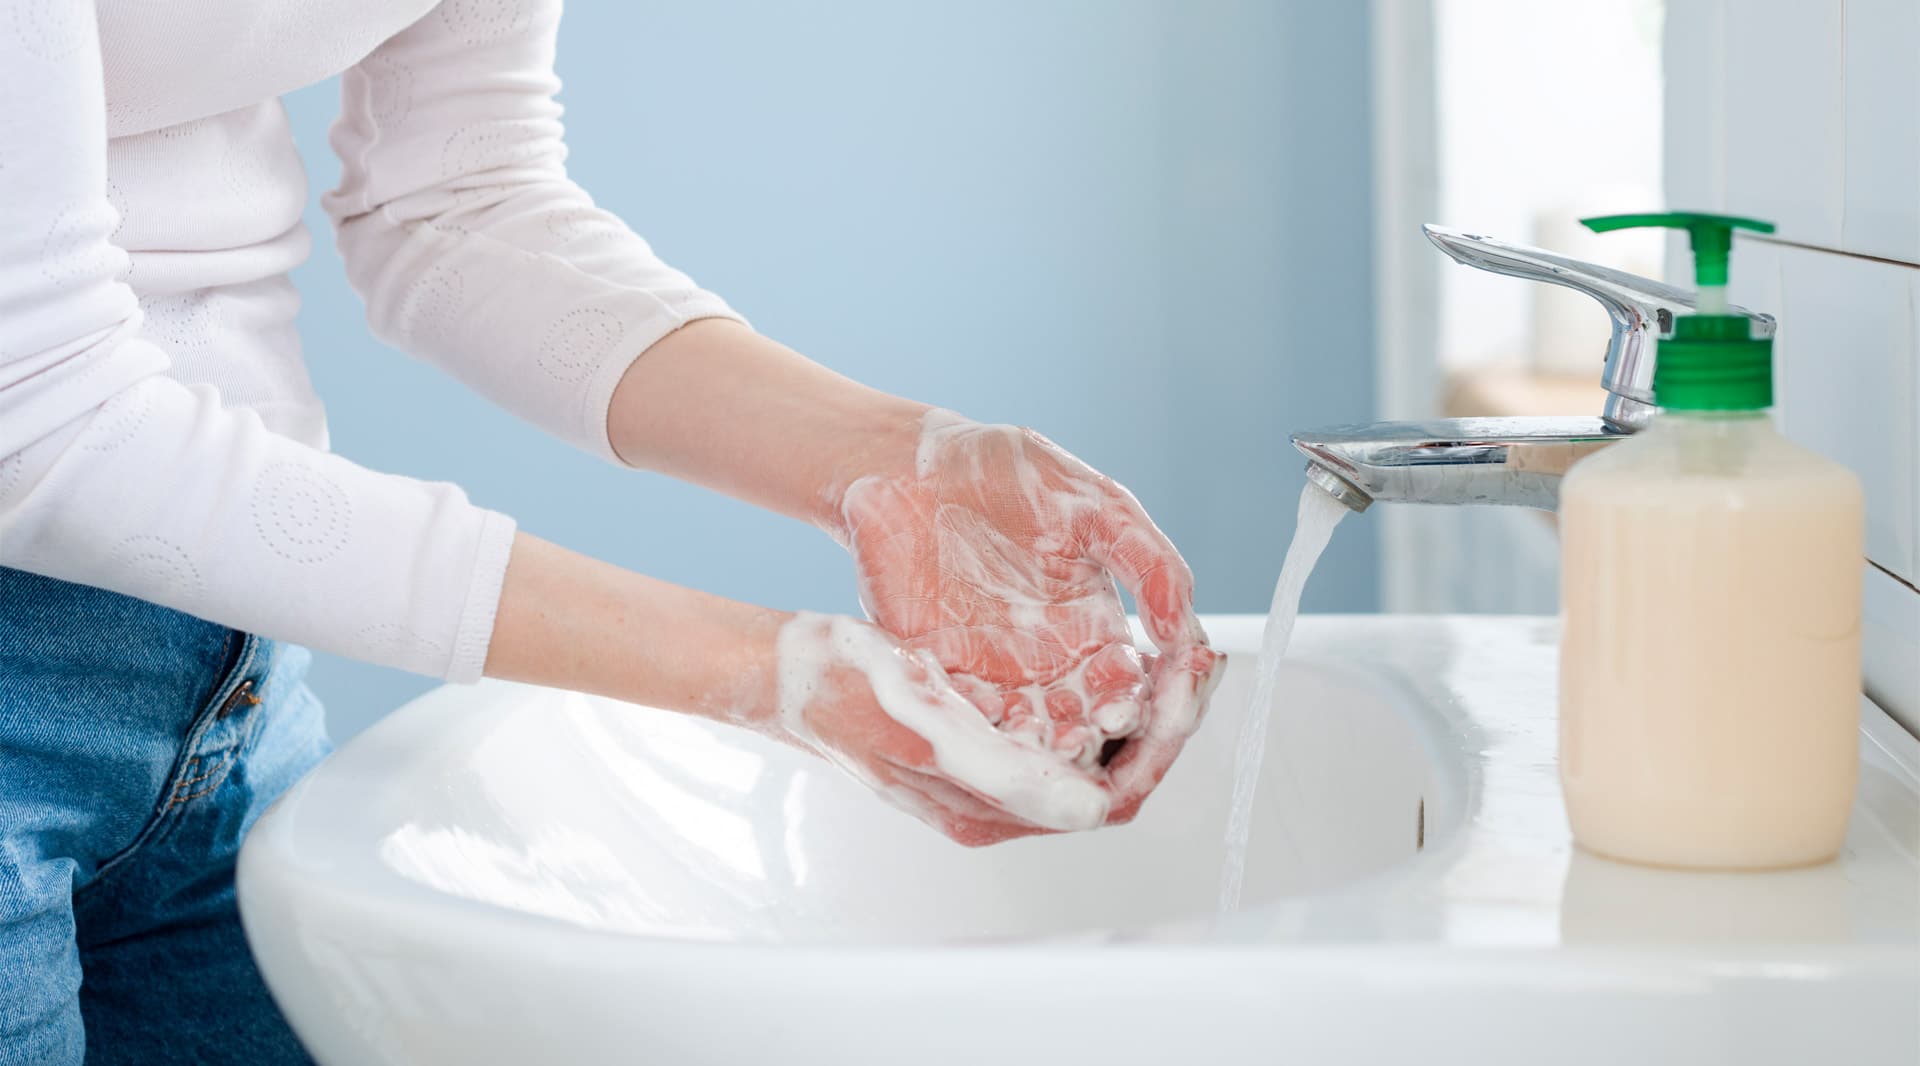 Coronavirus - person washing hands